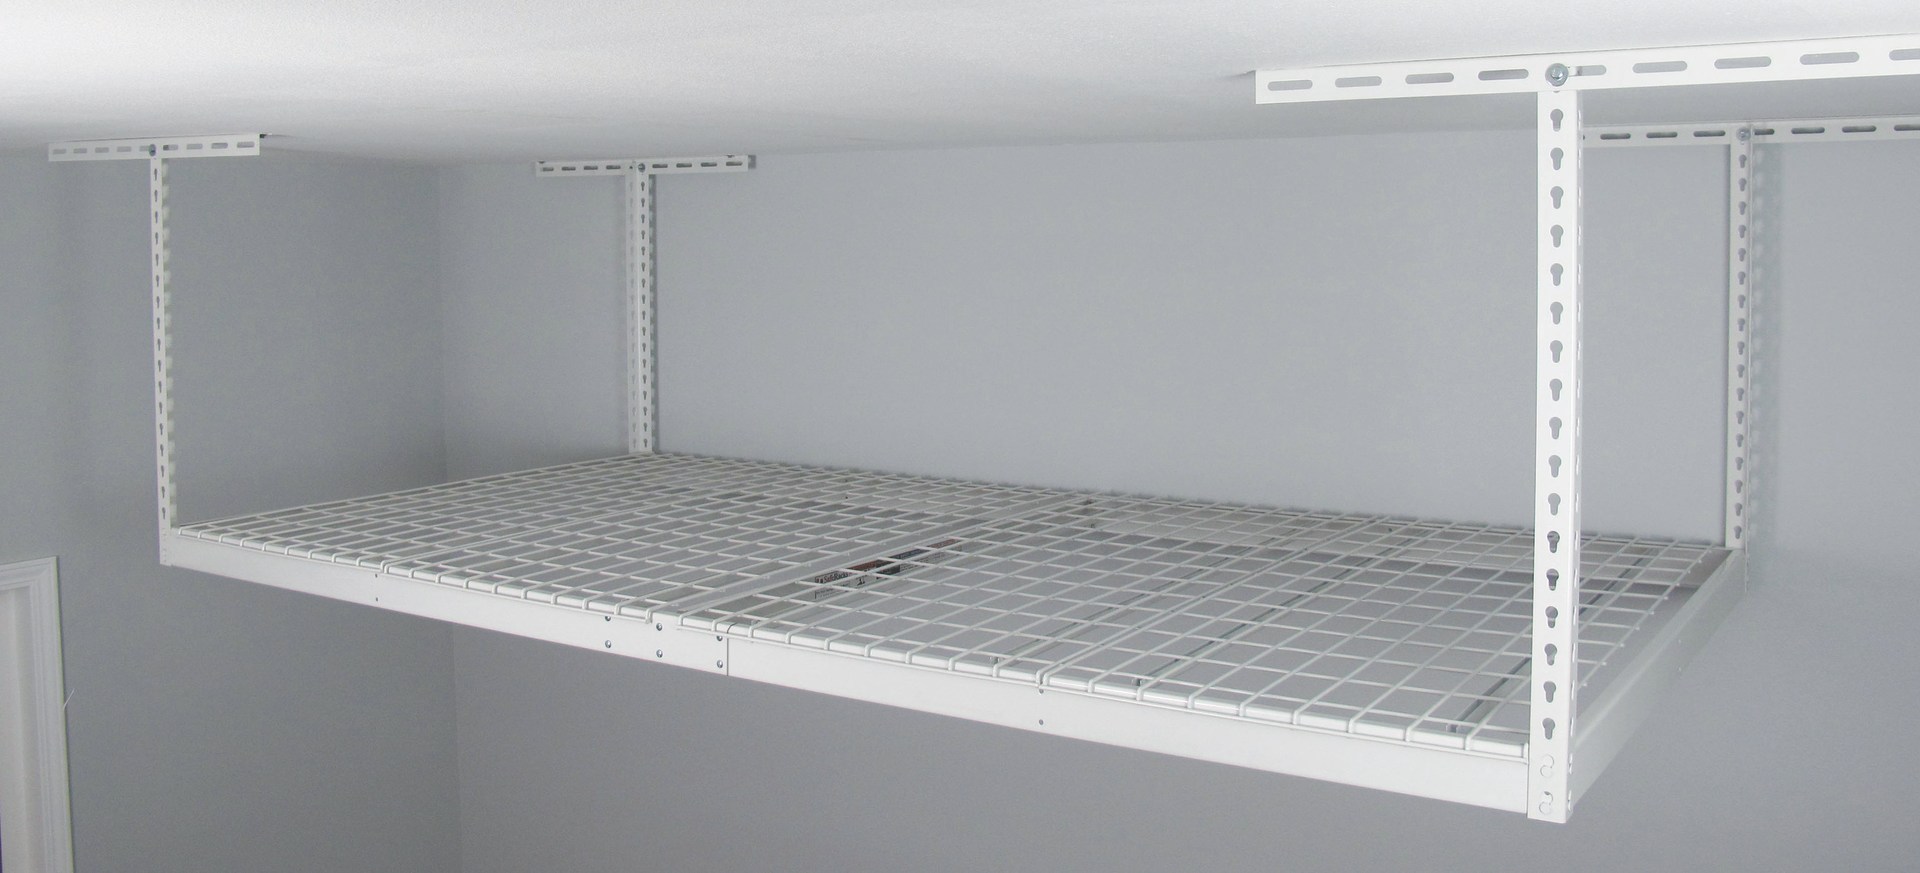 8 Ft Overhead Garage Storage Rack, Hanging Garage Shelves Costco